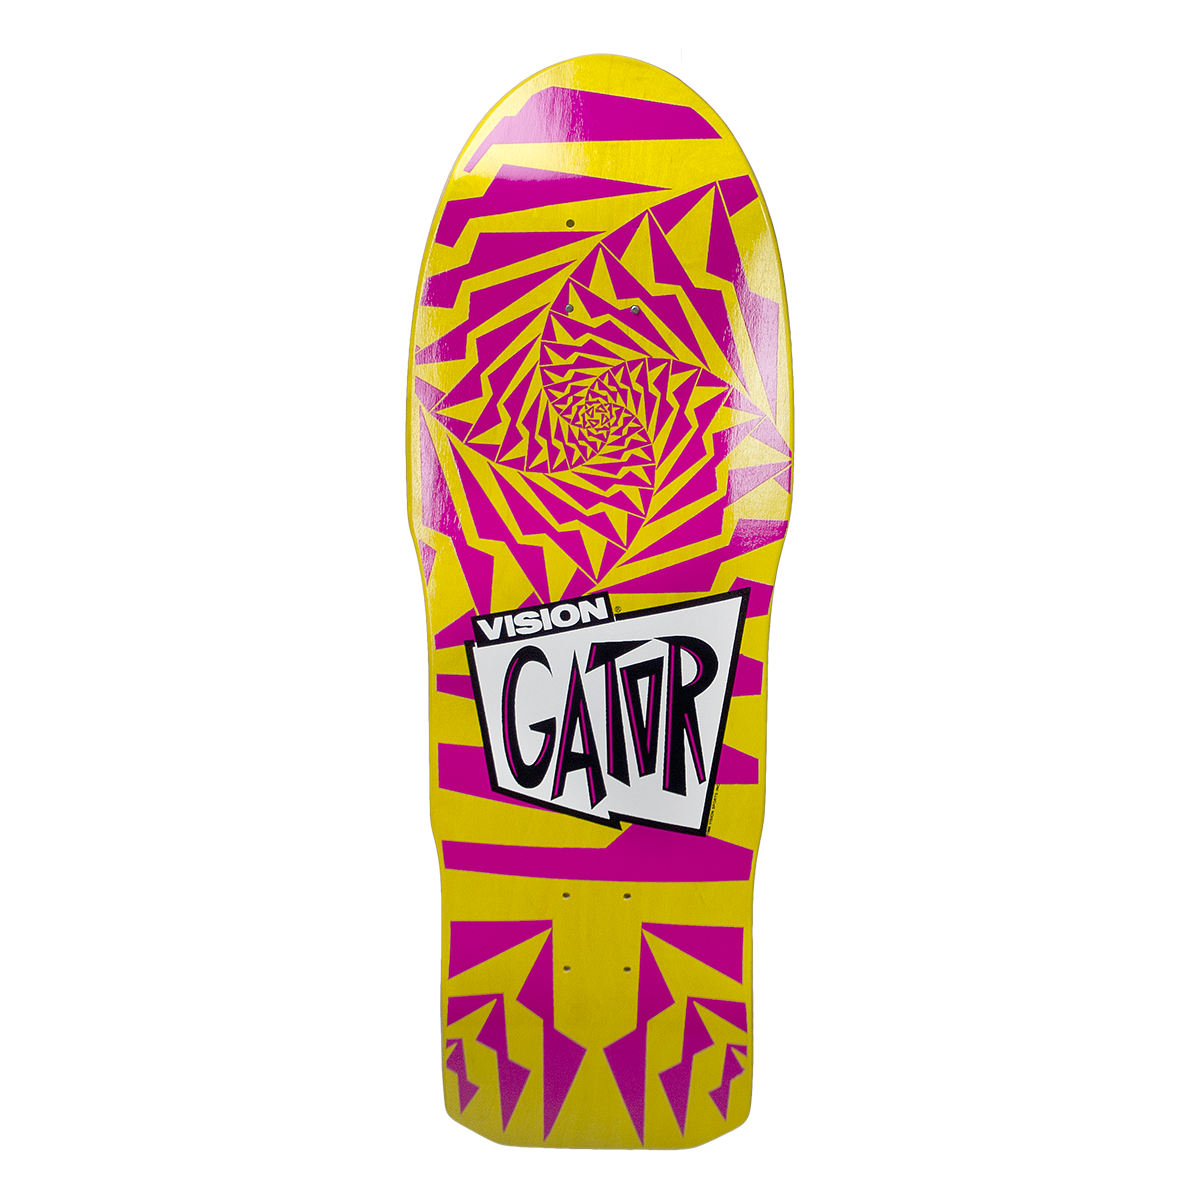 Details about   vision gator skateboard deck 